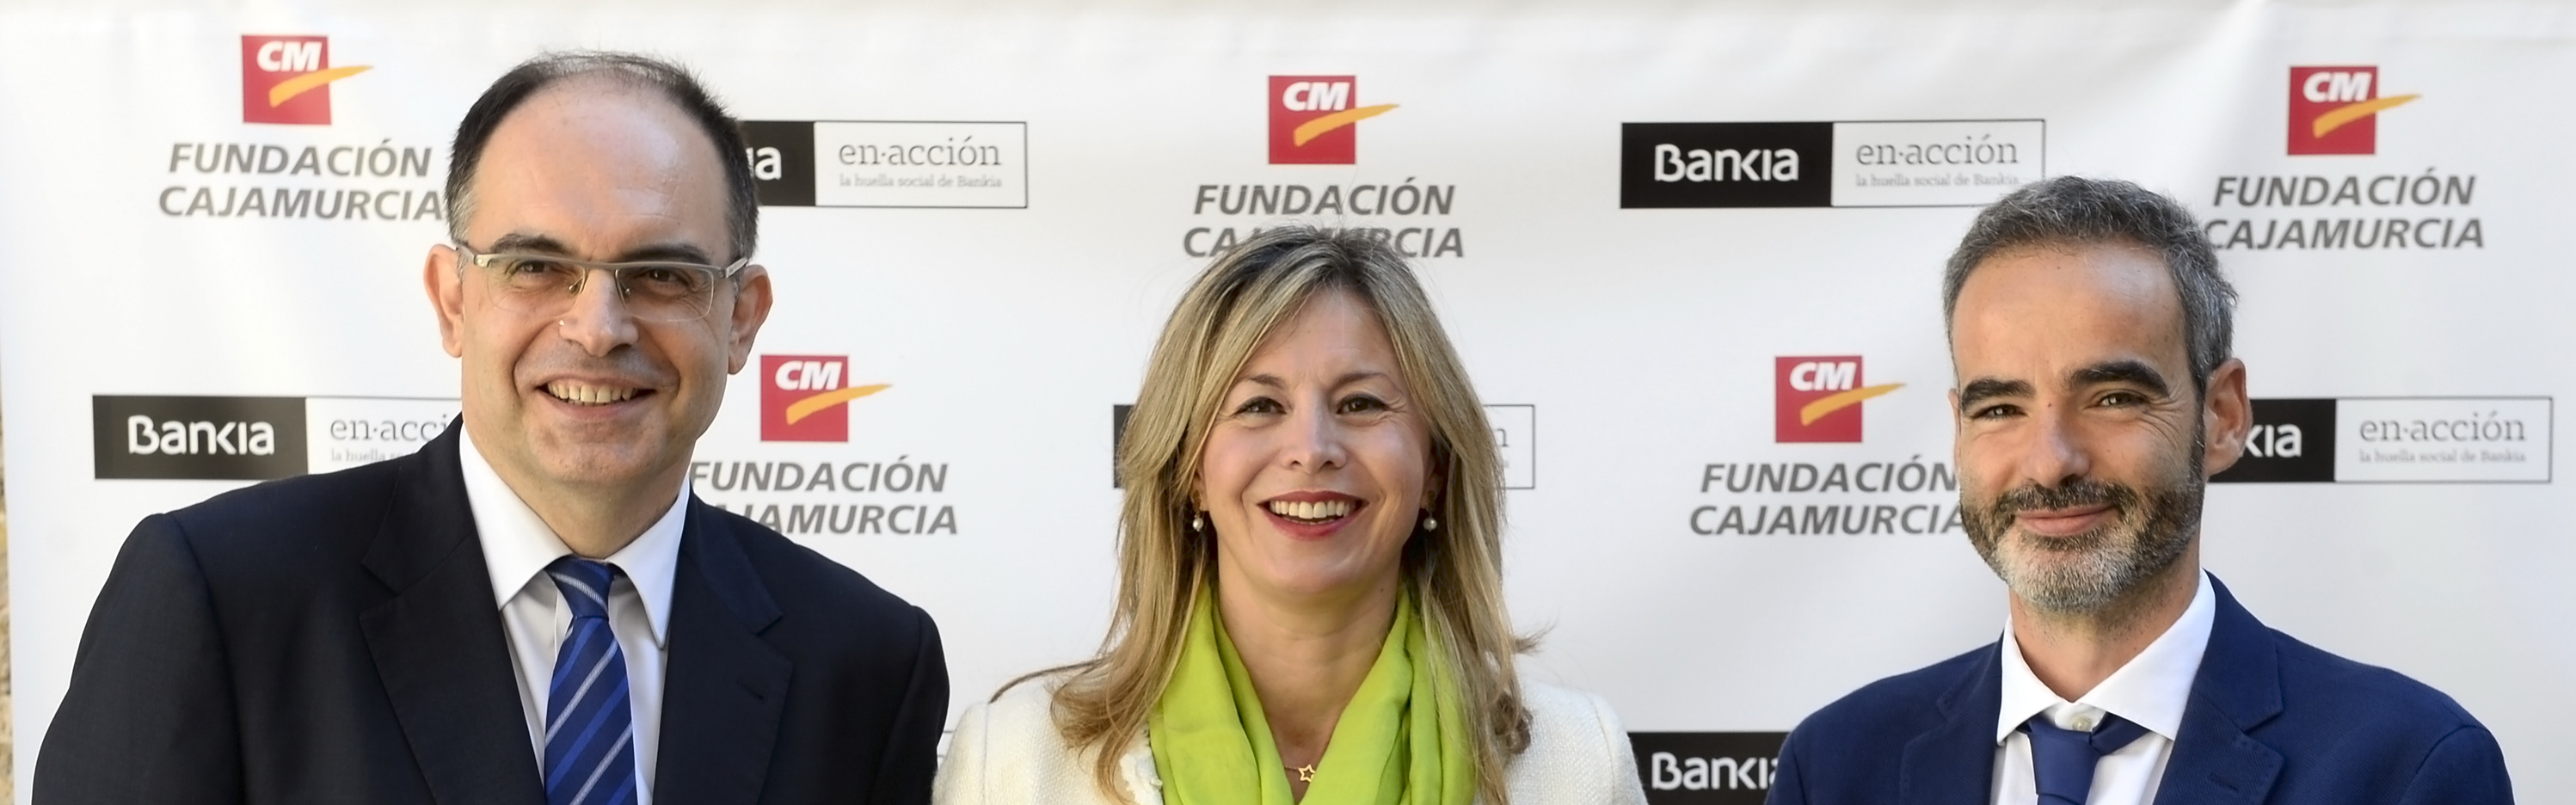 La Universidad de Murcia, Bankia y Fundación Cajamurcia conceden ayudas para estudiar en el extranjero